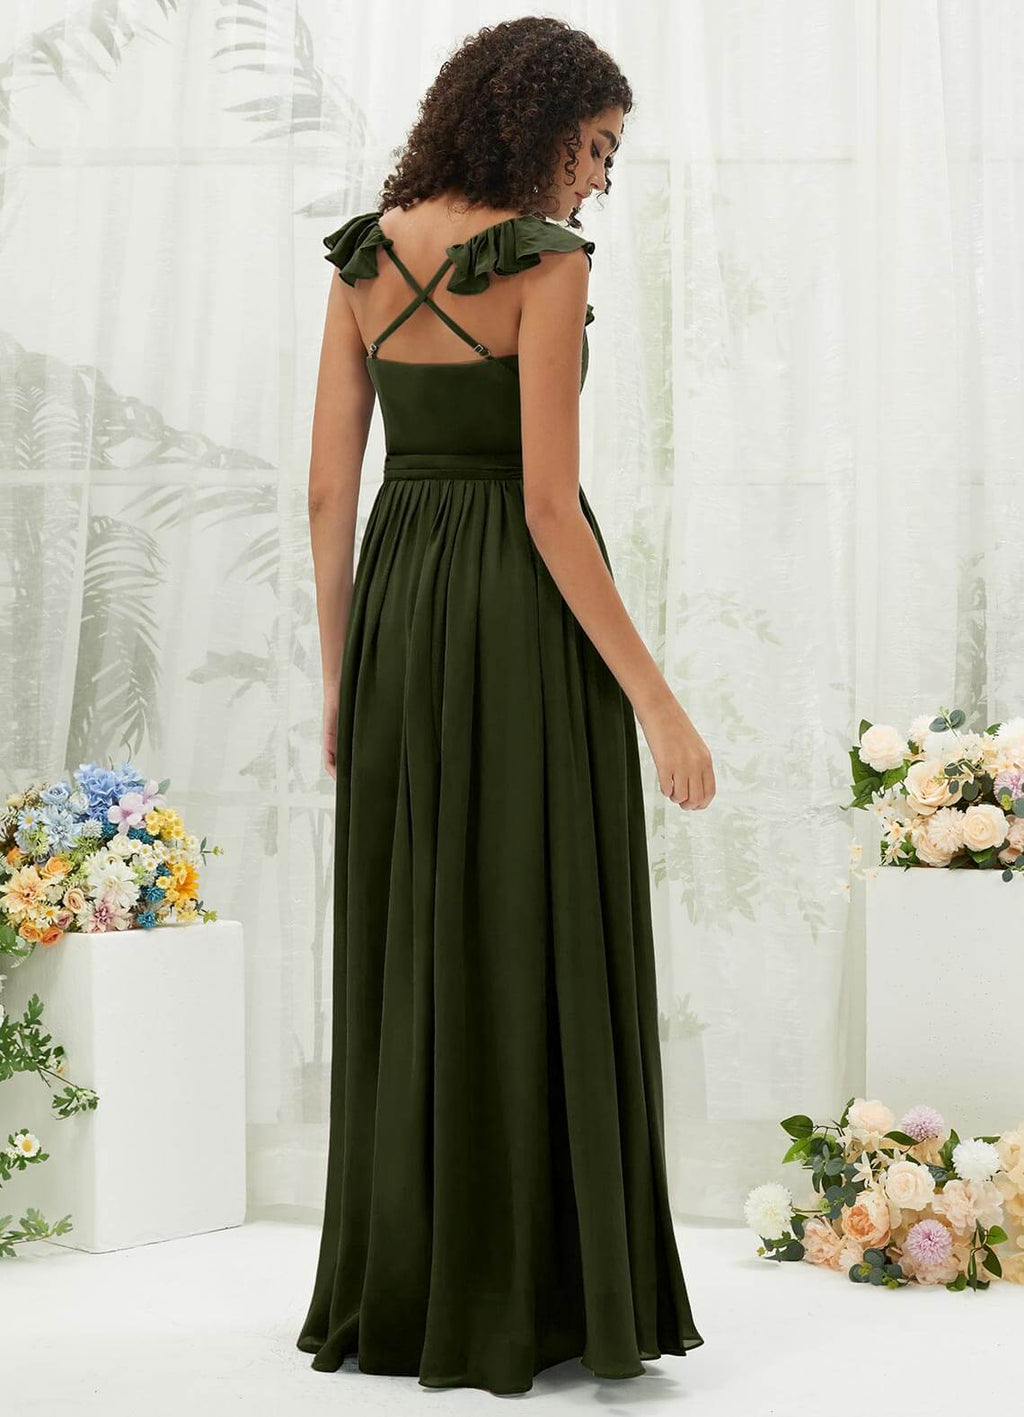 NZ Bridal Olive V Neck Wrap Chiffon Flowy Maxi Bridesmaid Dress R3702 Valerie a